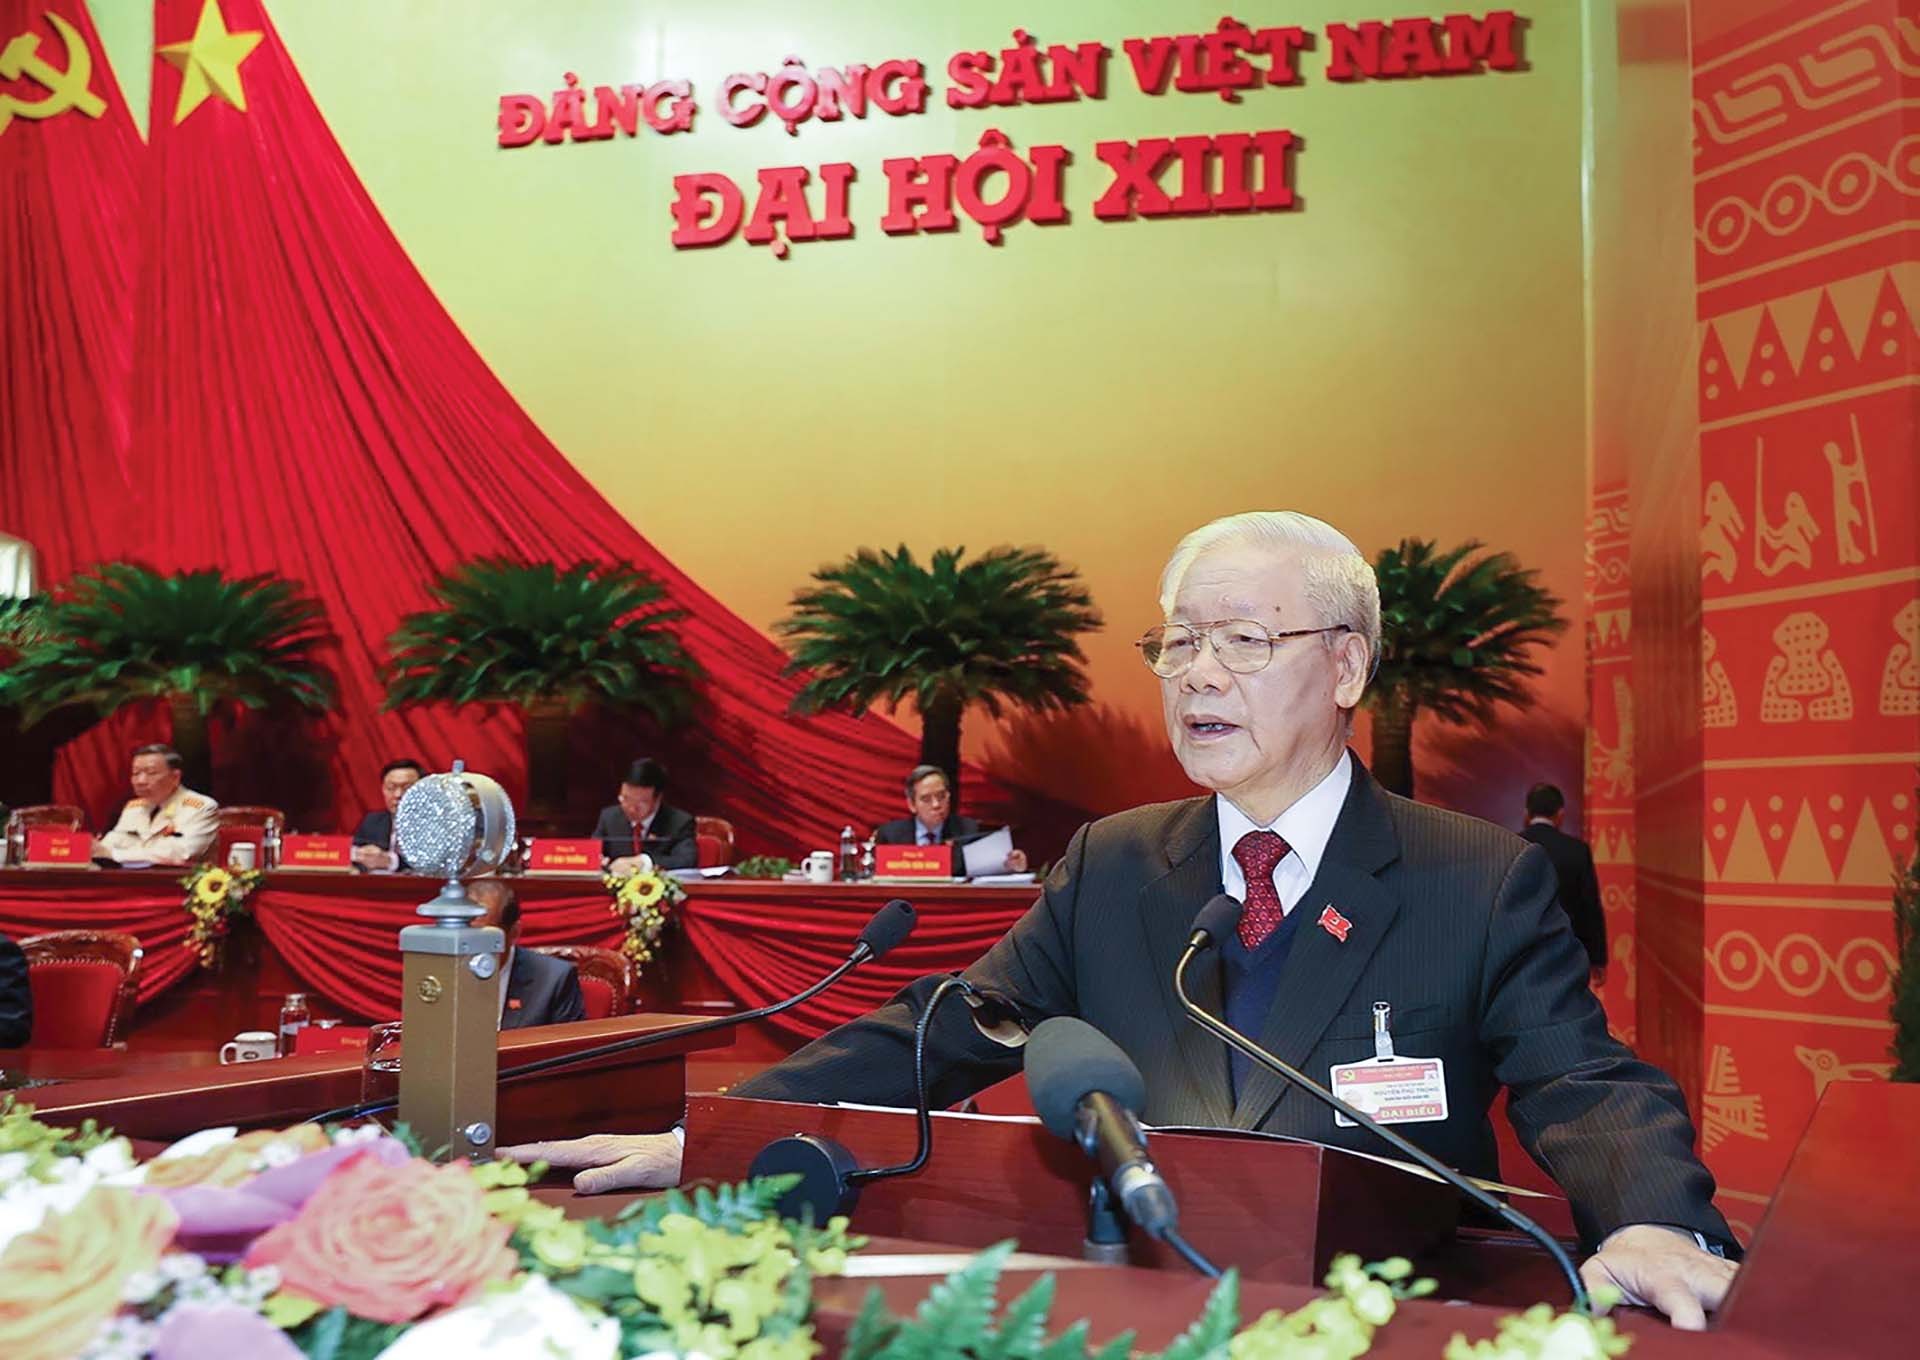 Ngày 26/1/2021, Tổng Bí thư, Chủ tịch nước Nguyễn Phú Trọng thay mặt Ban chấp hành Trung ương XII đọc báo cáo về văn kiện Đại hội XIII. (Ảnh: Tuấn Anh)